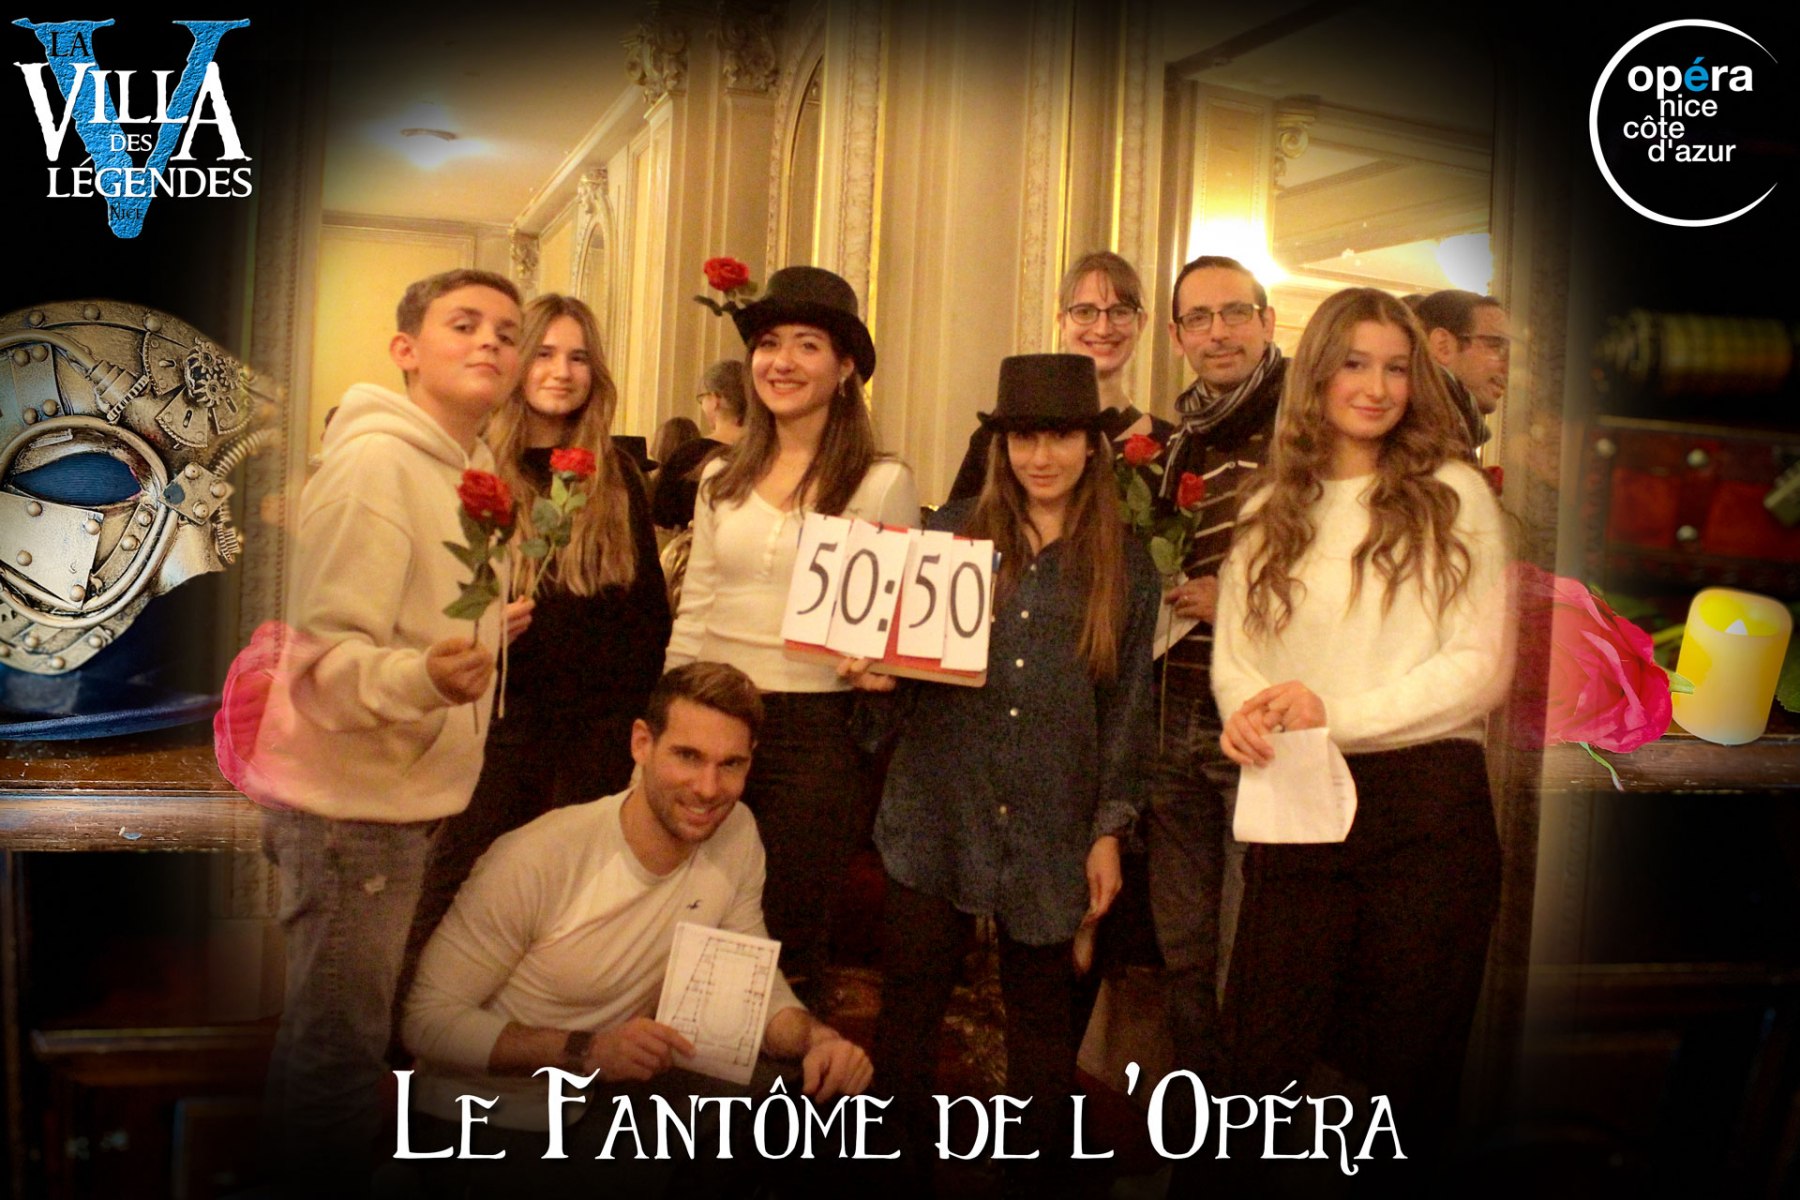 Le_Fantome_de_lOpera-Photos_Joueurs-11_dec_2021-La_Villa_des_Legendes-Opera_de_Nicegroupe_07